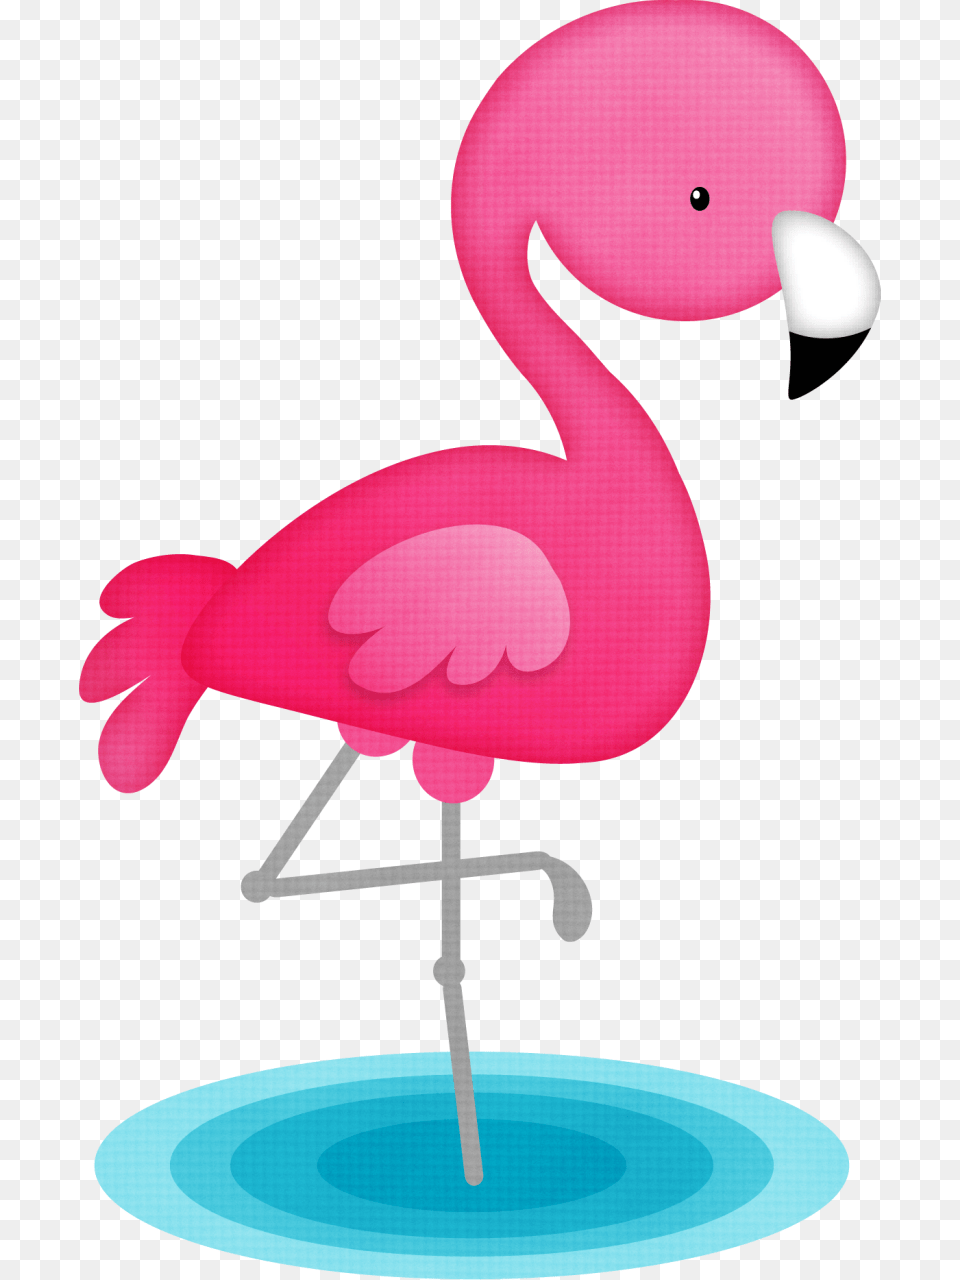 Flamingo Dreams, Animal, Bird Png Image